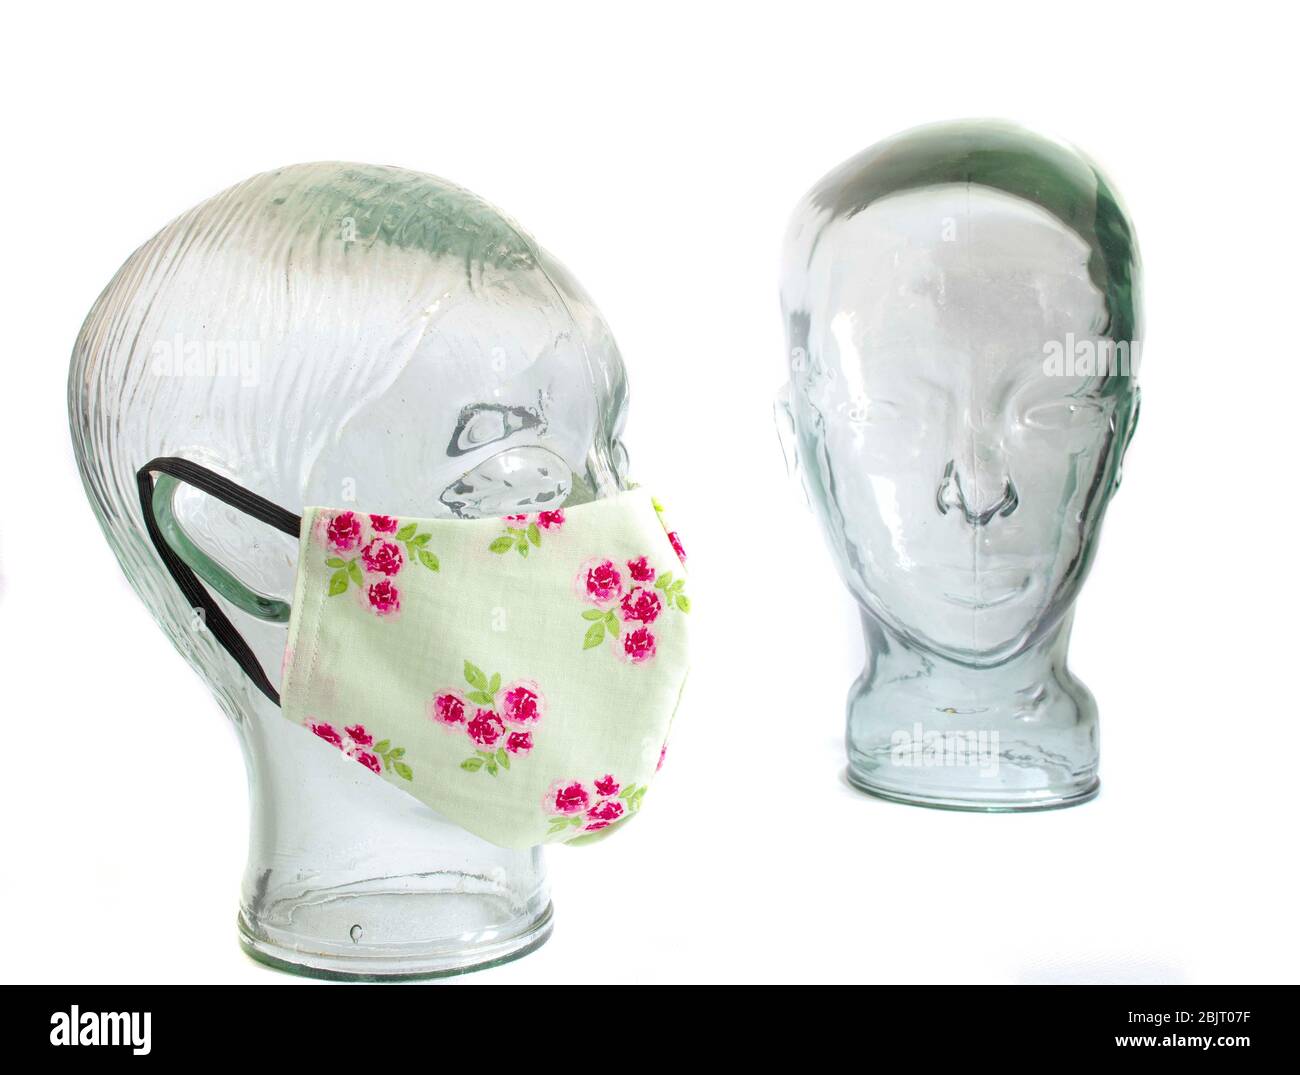 Maschere facciali di protezione su una testa in vetro senza volto DPI dispositivi di protezione individuale con fondo bianco Foto Stock